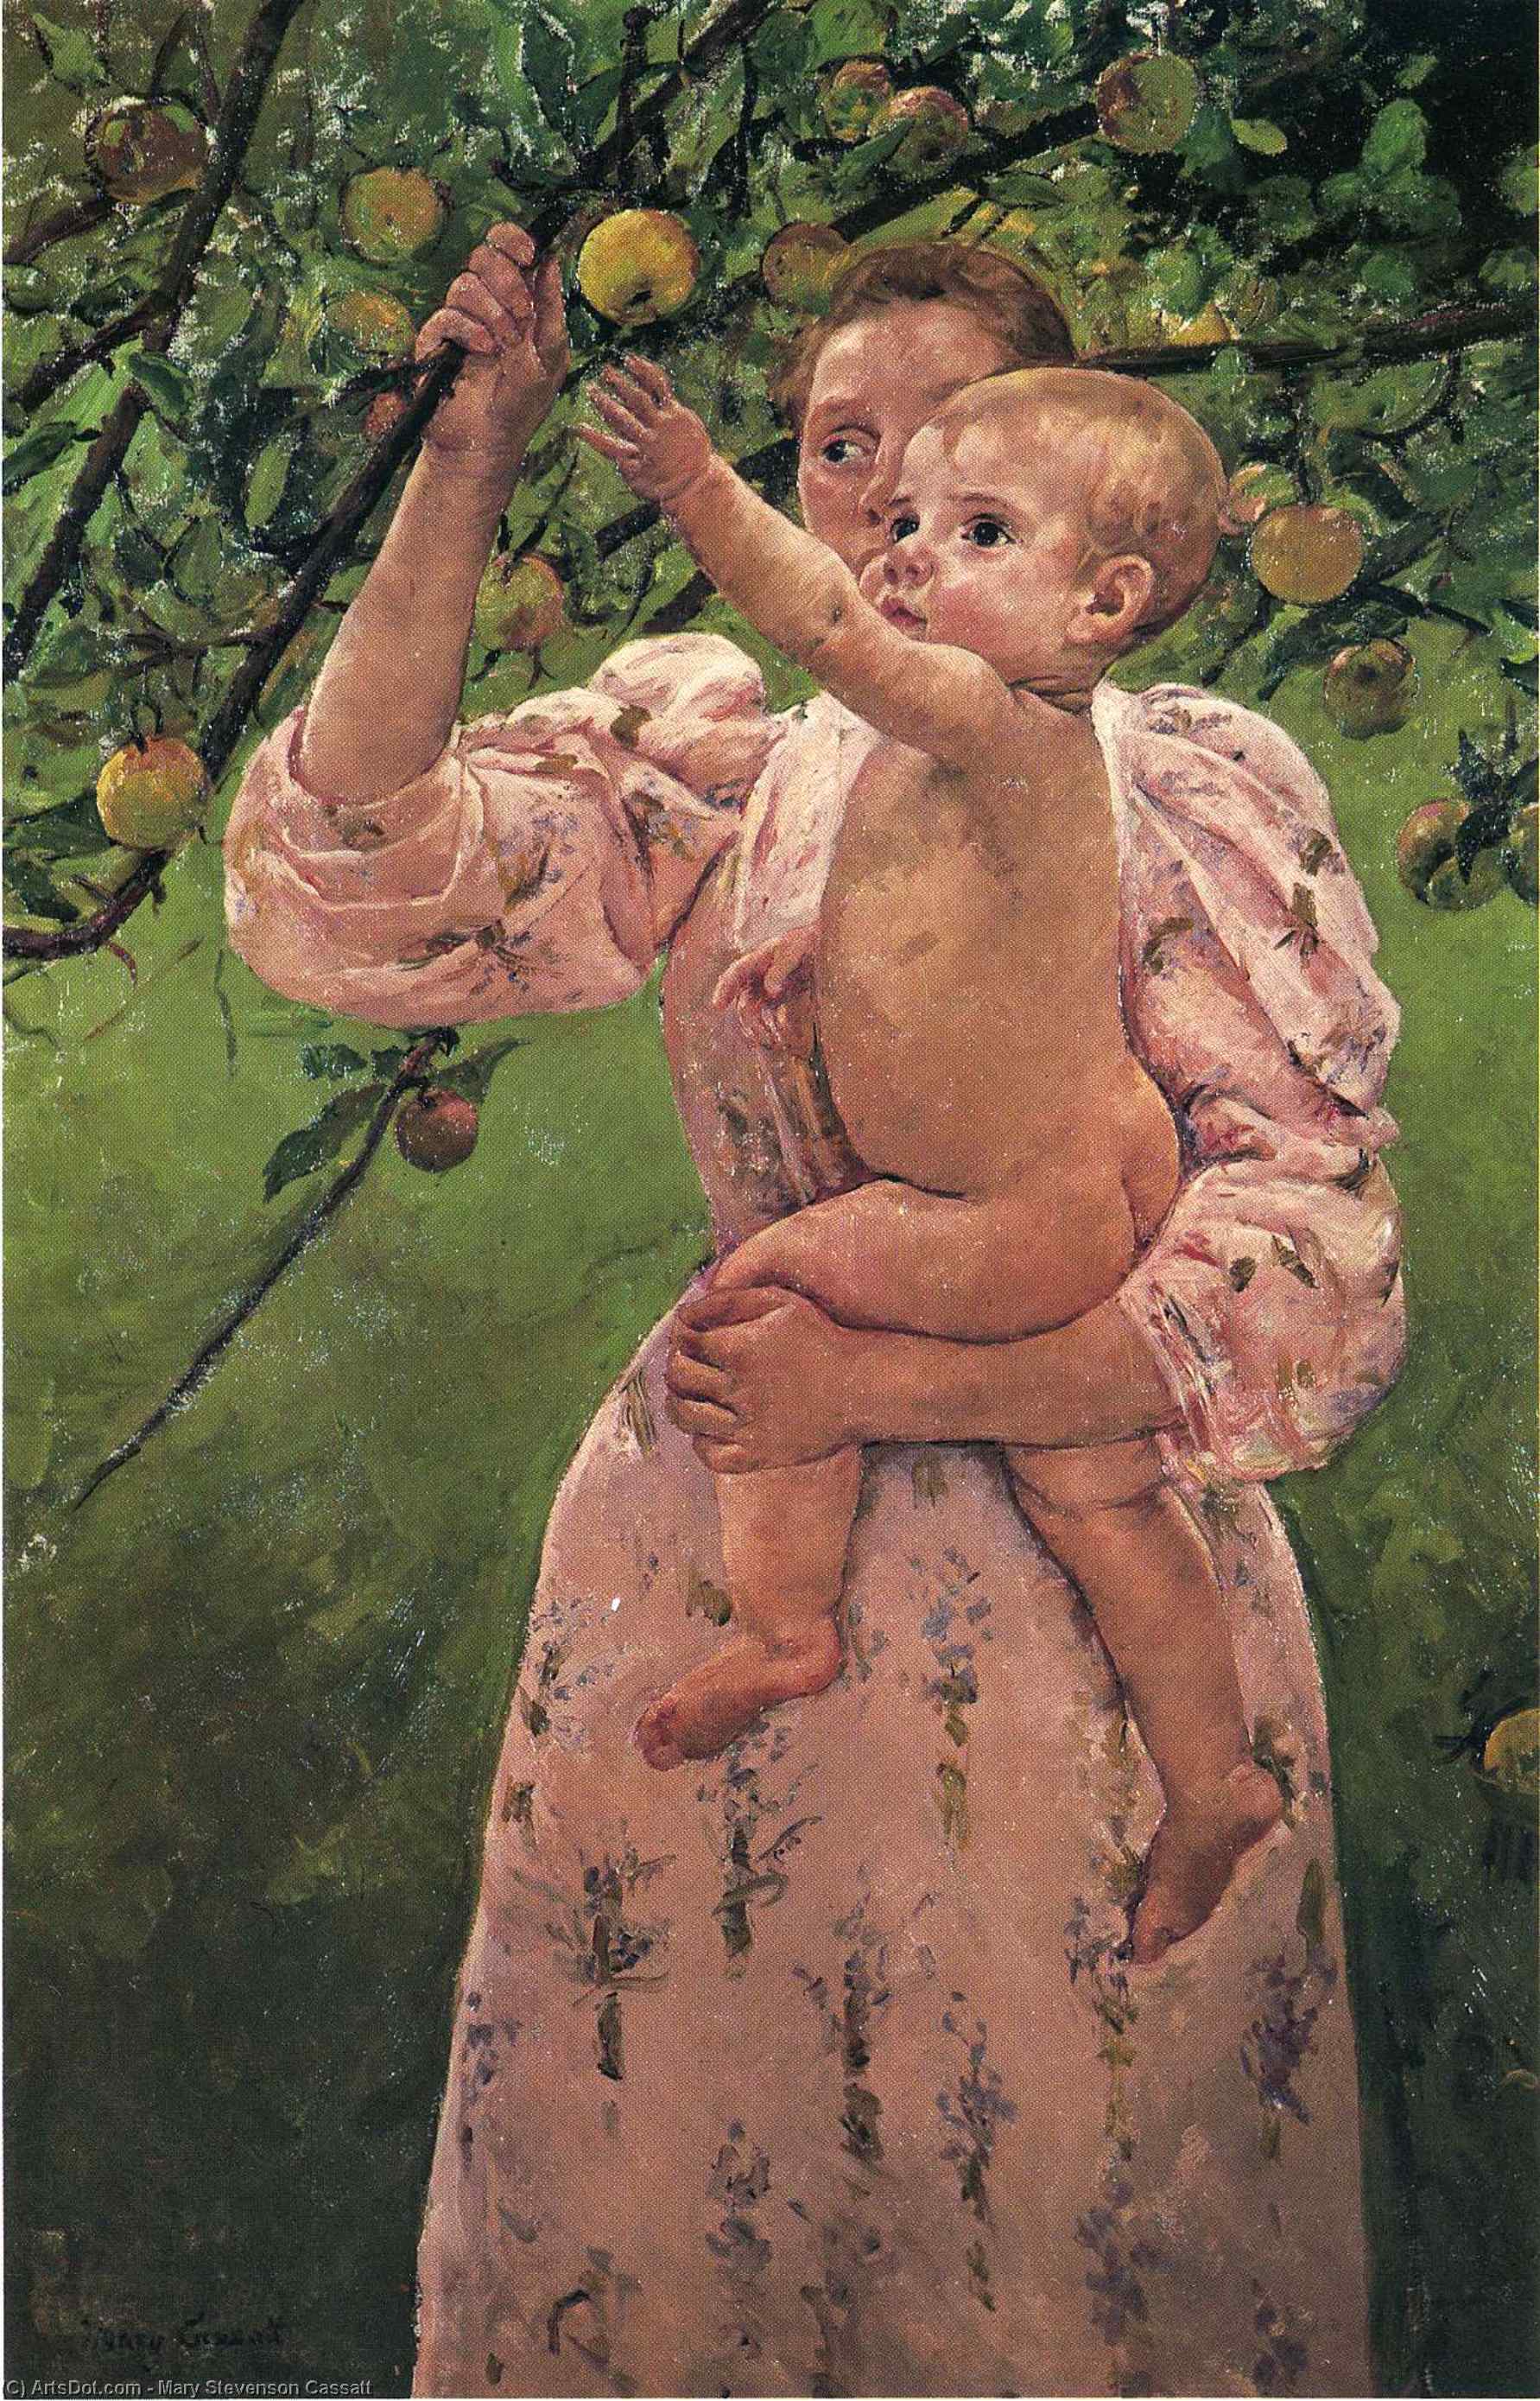 WikiOO.org - Enciclopédia das Belas Artes - Pintura, Arte por Mary Stevenson Cassatt - Baby Reaching For An Apple